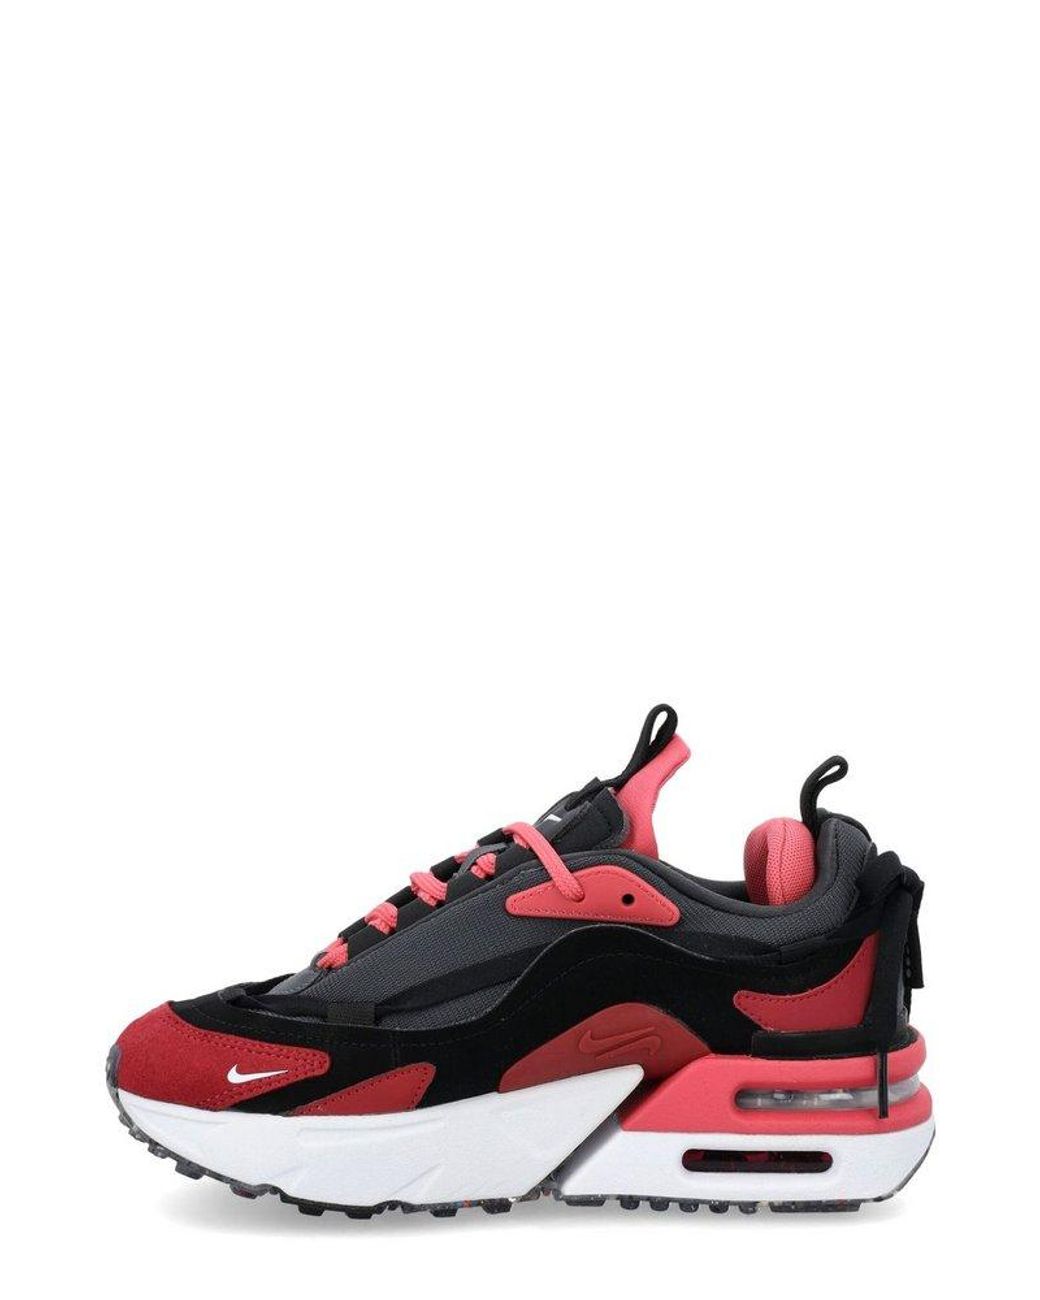 Nike Air Max Furyosa Sneakers in Red | Lyst UK